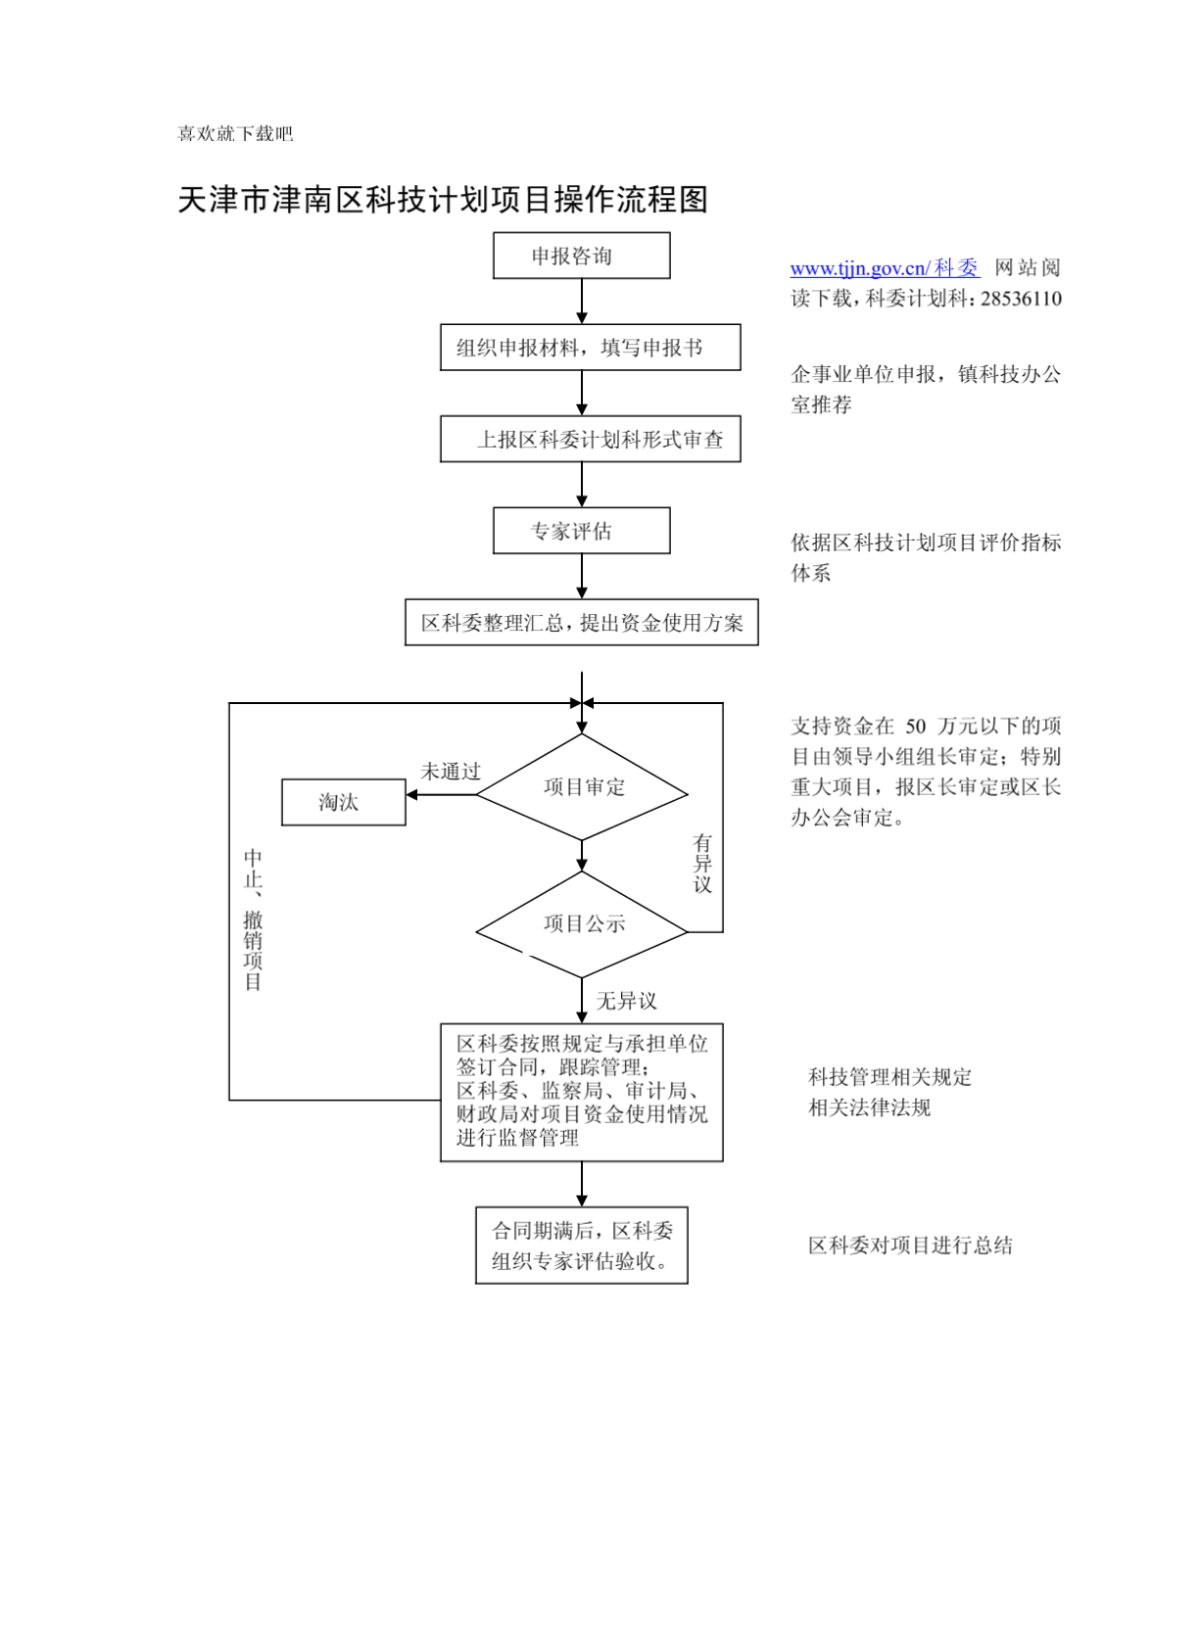 天津市津南区科技计划项目操作流程图-图二